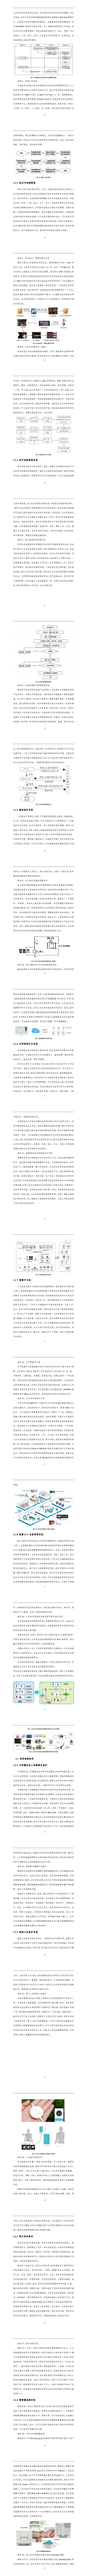 【中国信通院】2020医疗健康物联网技术与应用研究报告_3.jpg